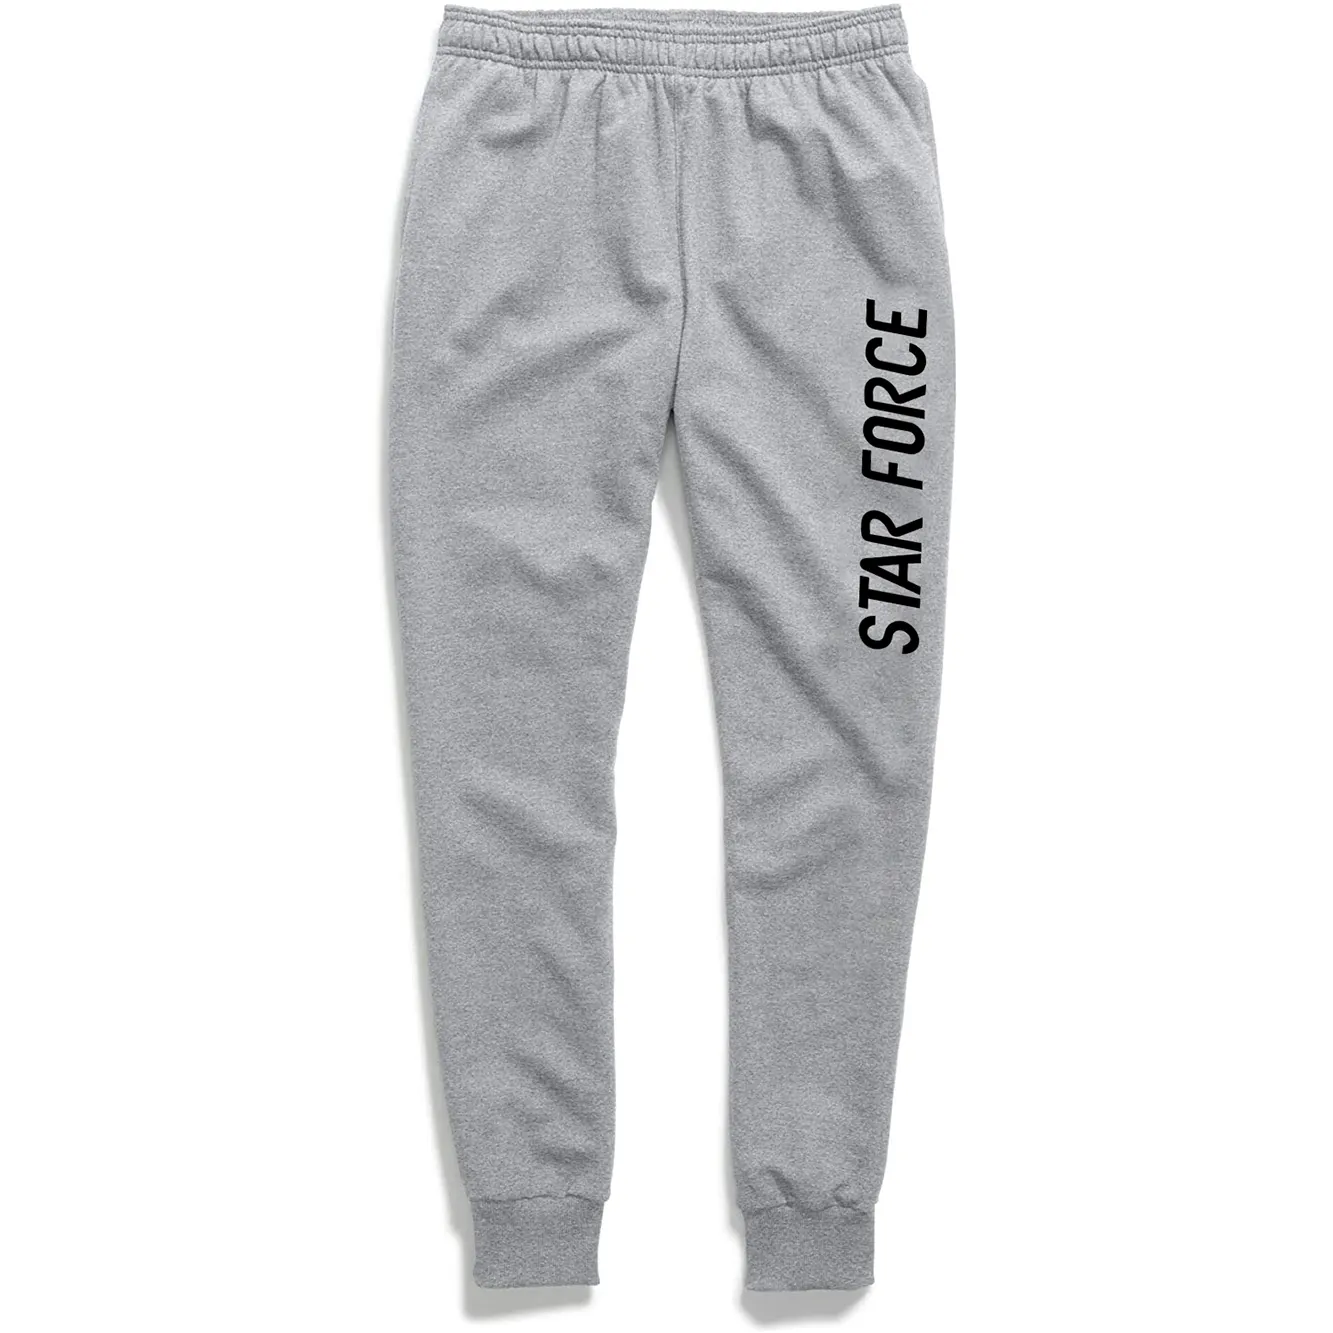 cotton fleece men wholesale sweat pants/men's tracksuit bottoms/custom jogging sweatpants